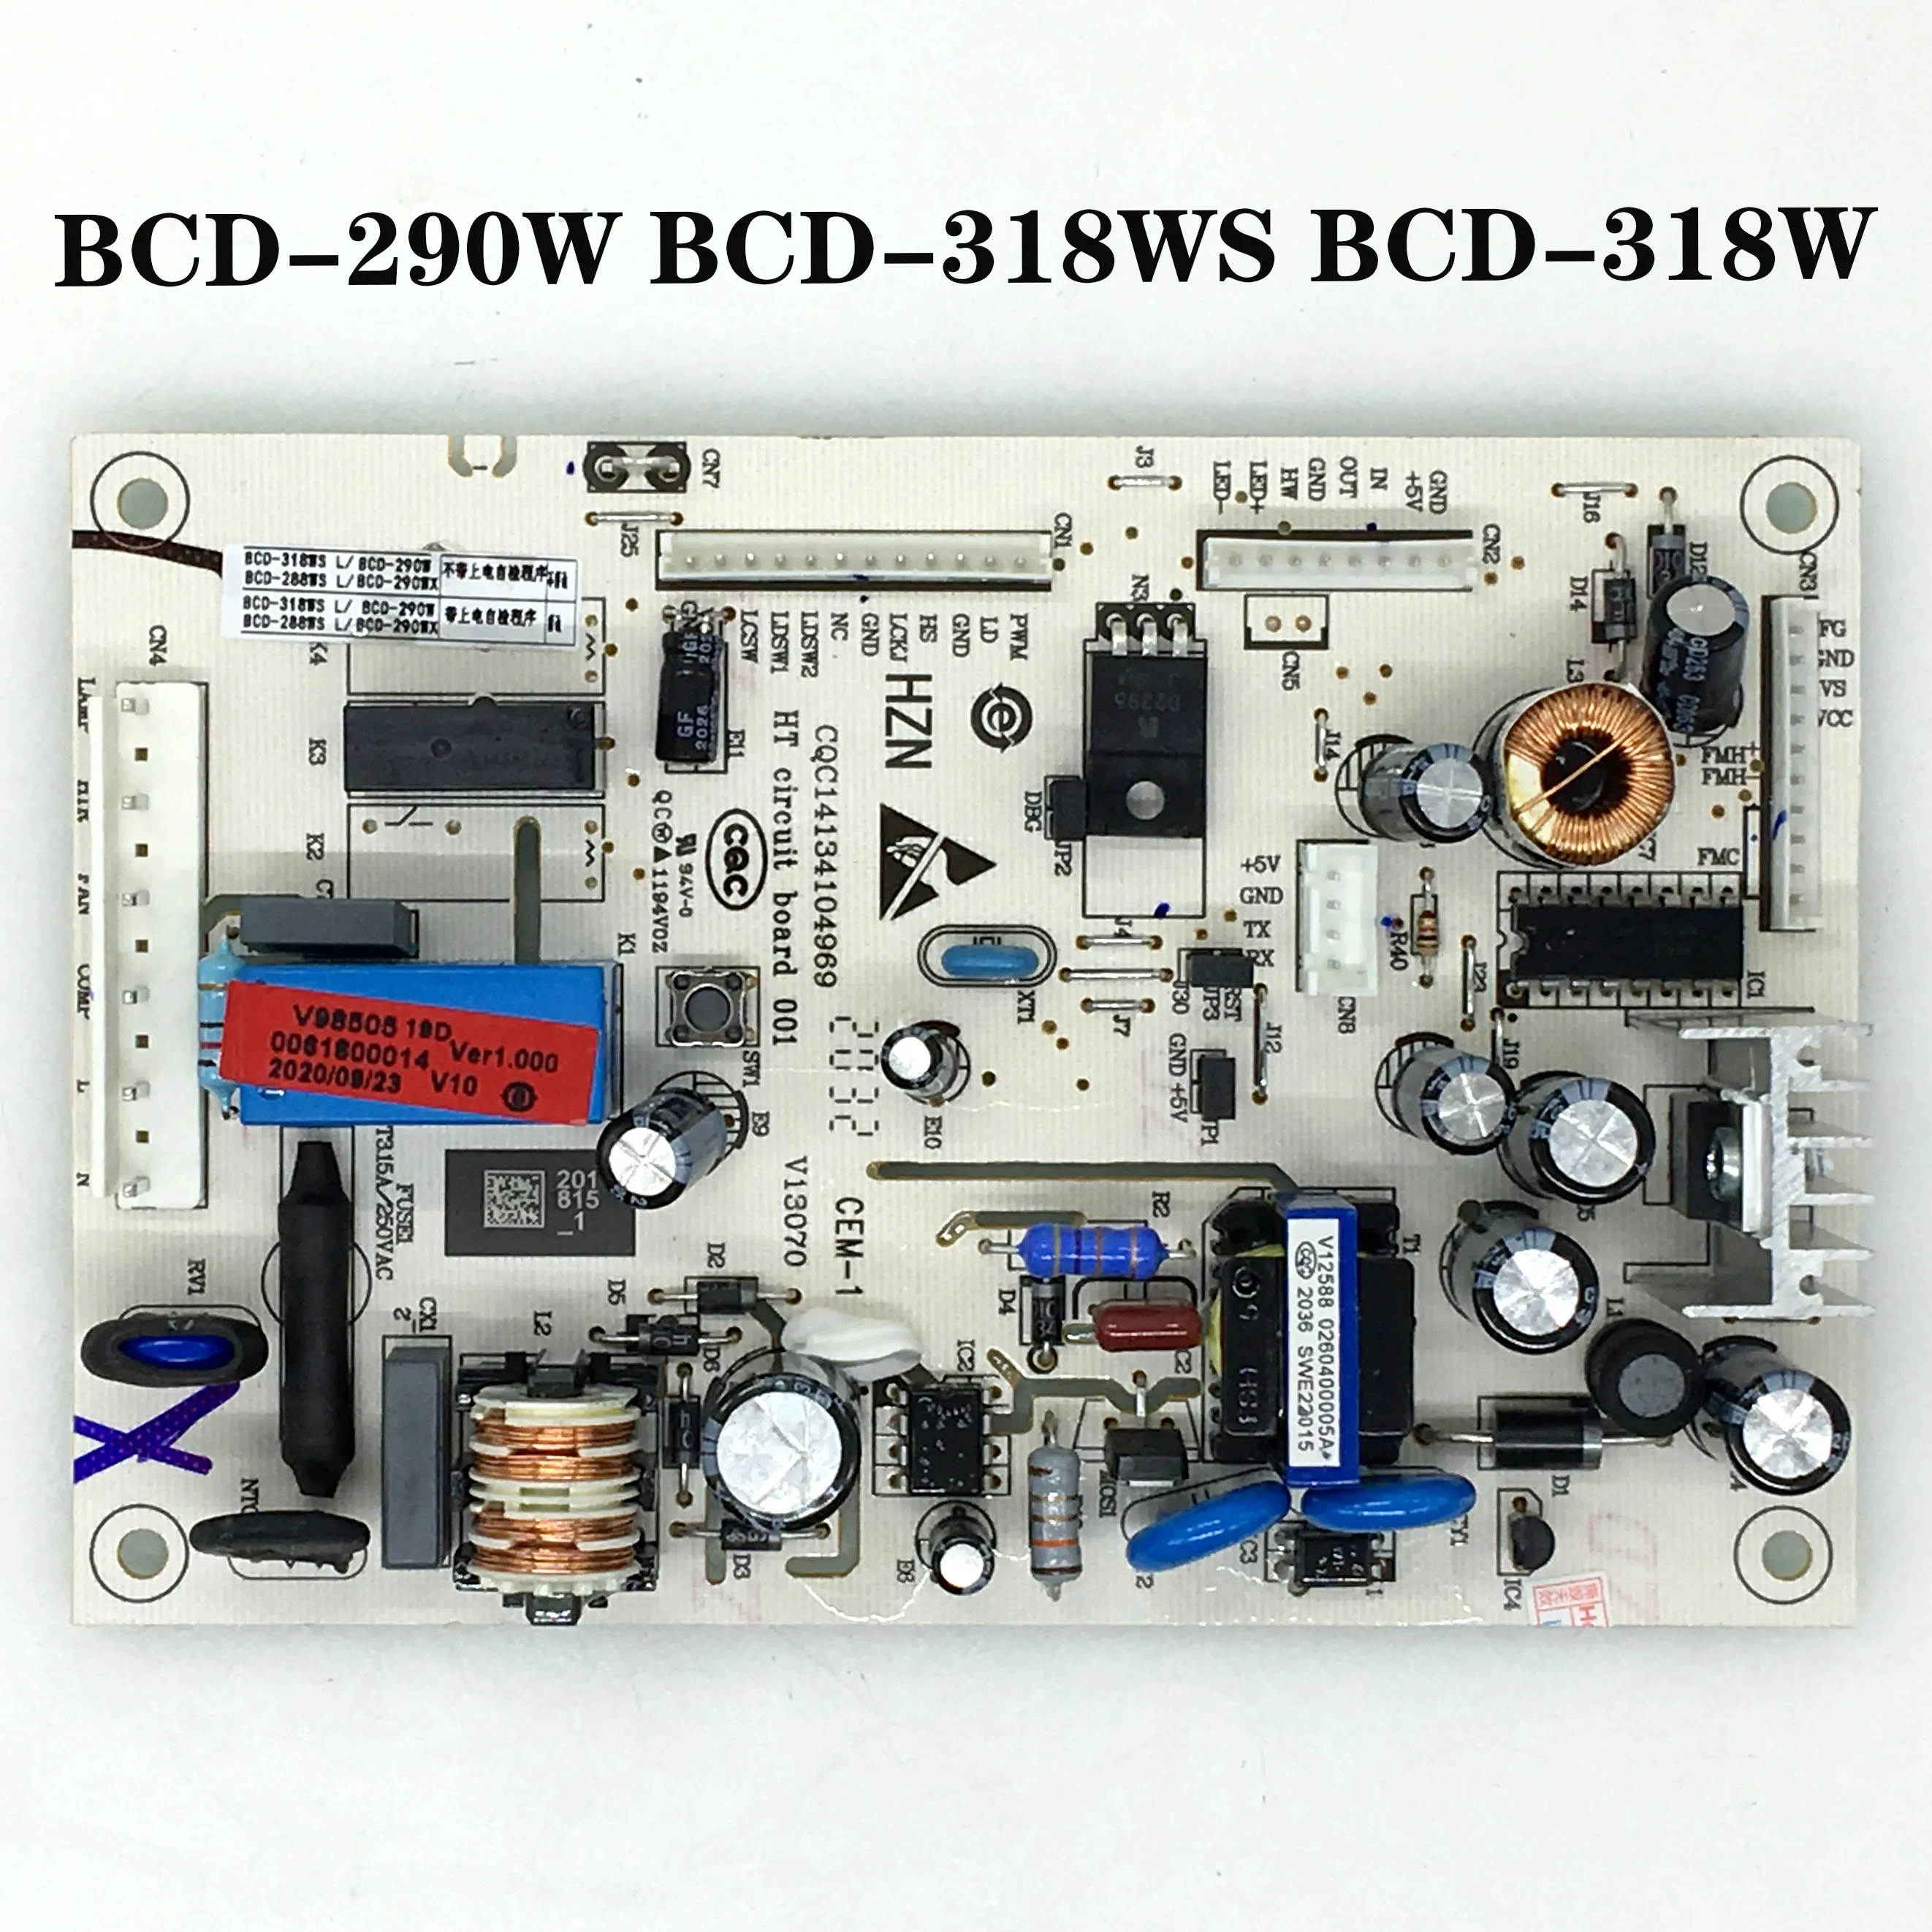 De prueba de trabajo para el refrigerador de la junta de bcd-219sk bcd-2 BCD-290W,BCD-318WS BCD-318W de la junta de control 0061800014 0